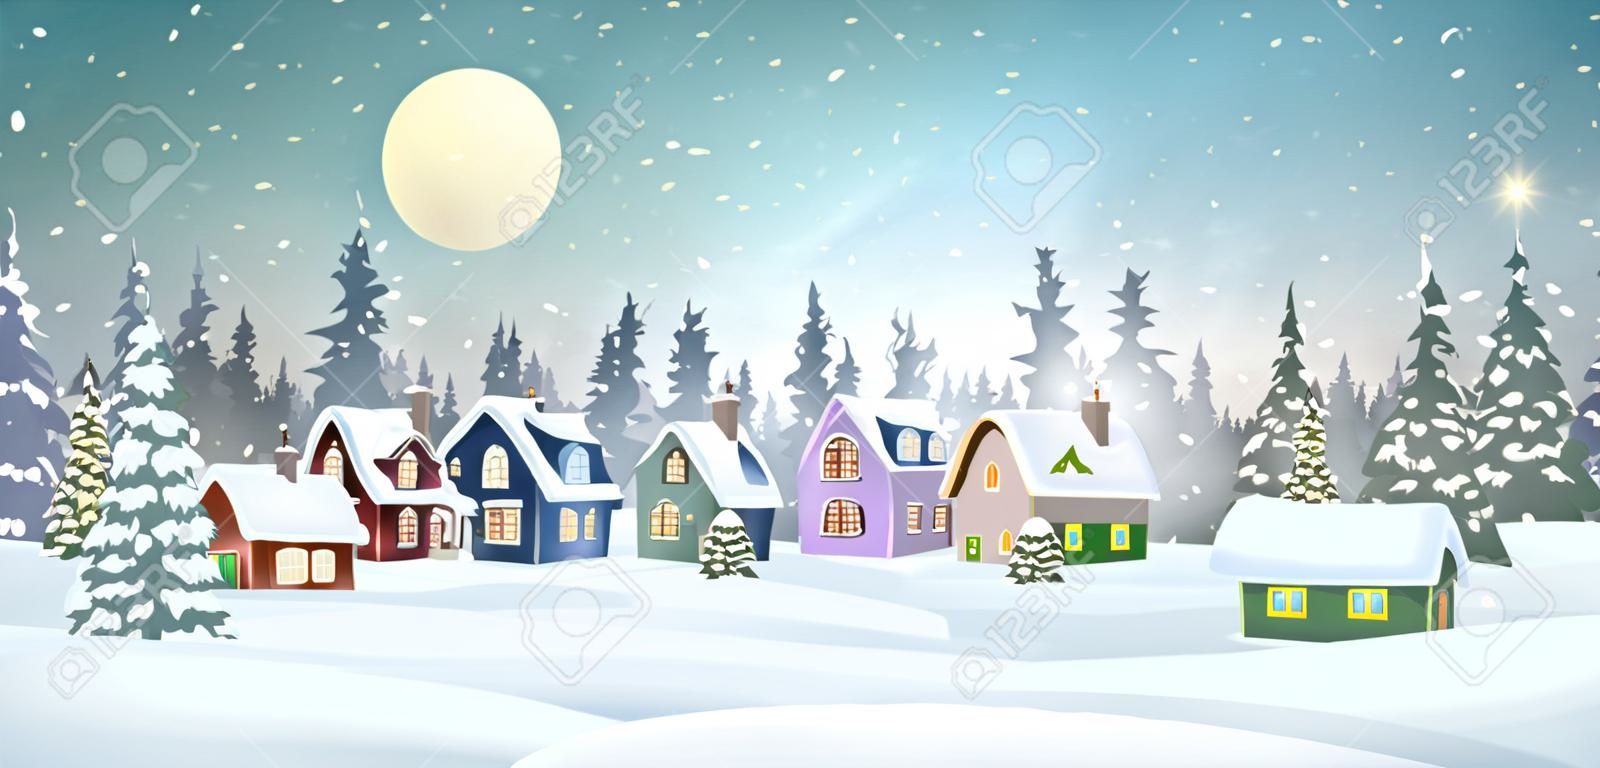 Winterdorflandschaft mit schneebedeckten Häusern im Pinienwald. Weihnachtsferien-Vektor-Illustration